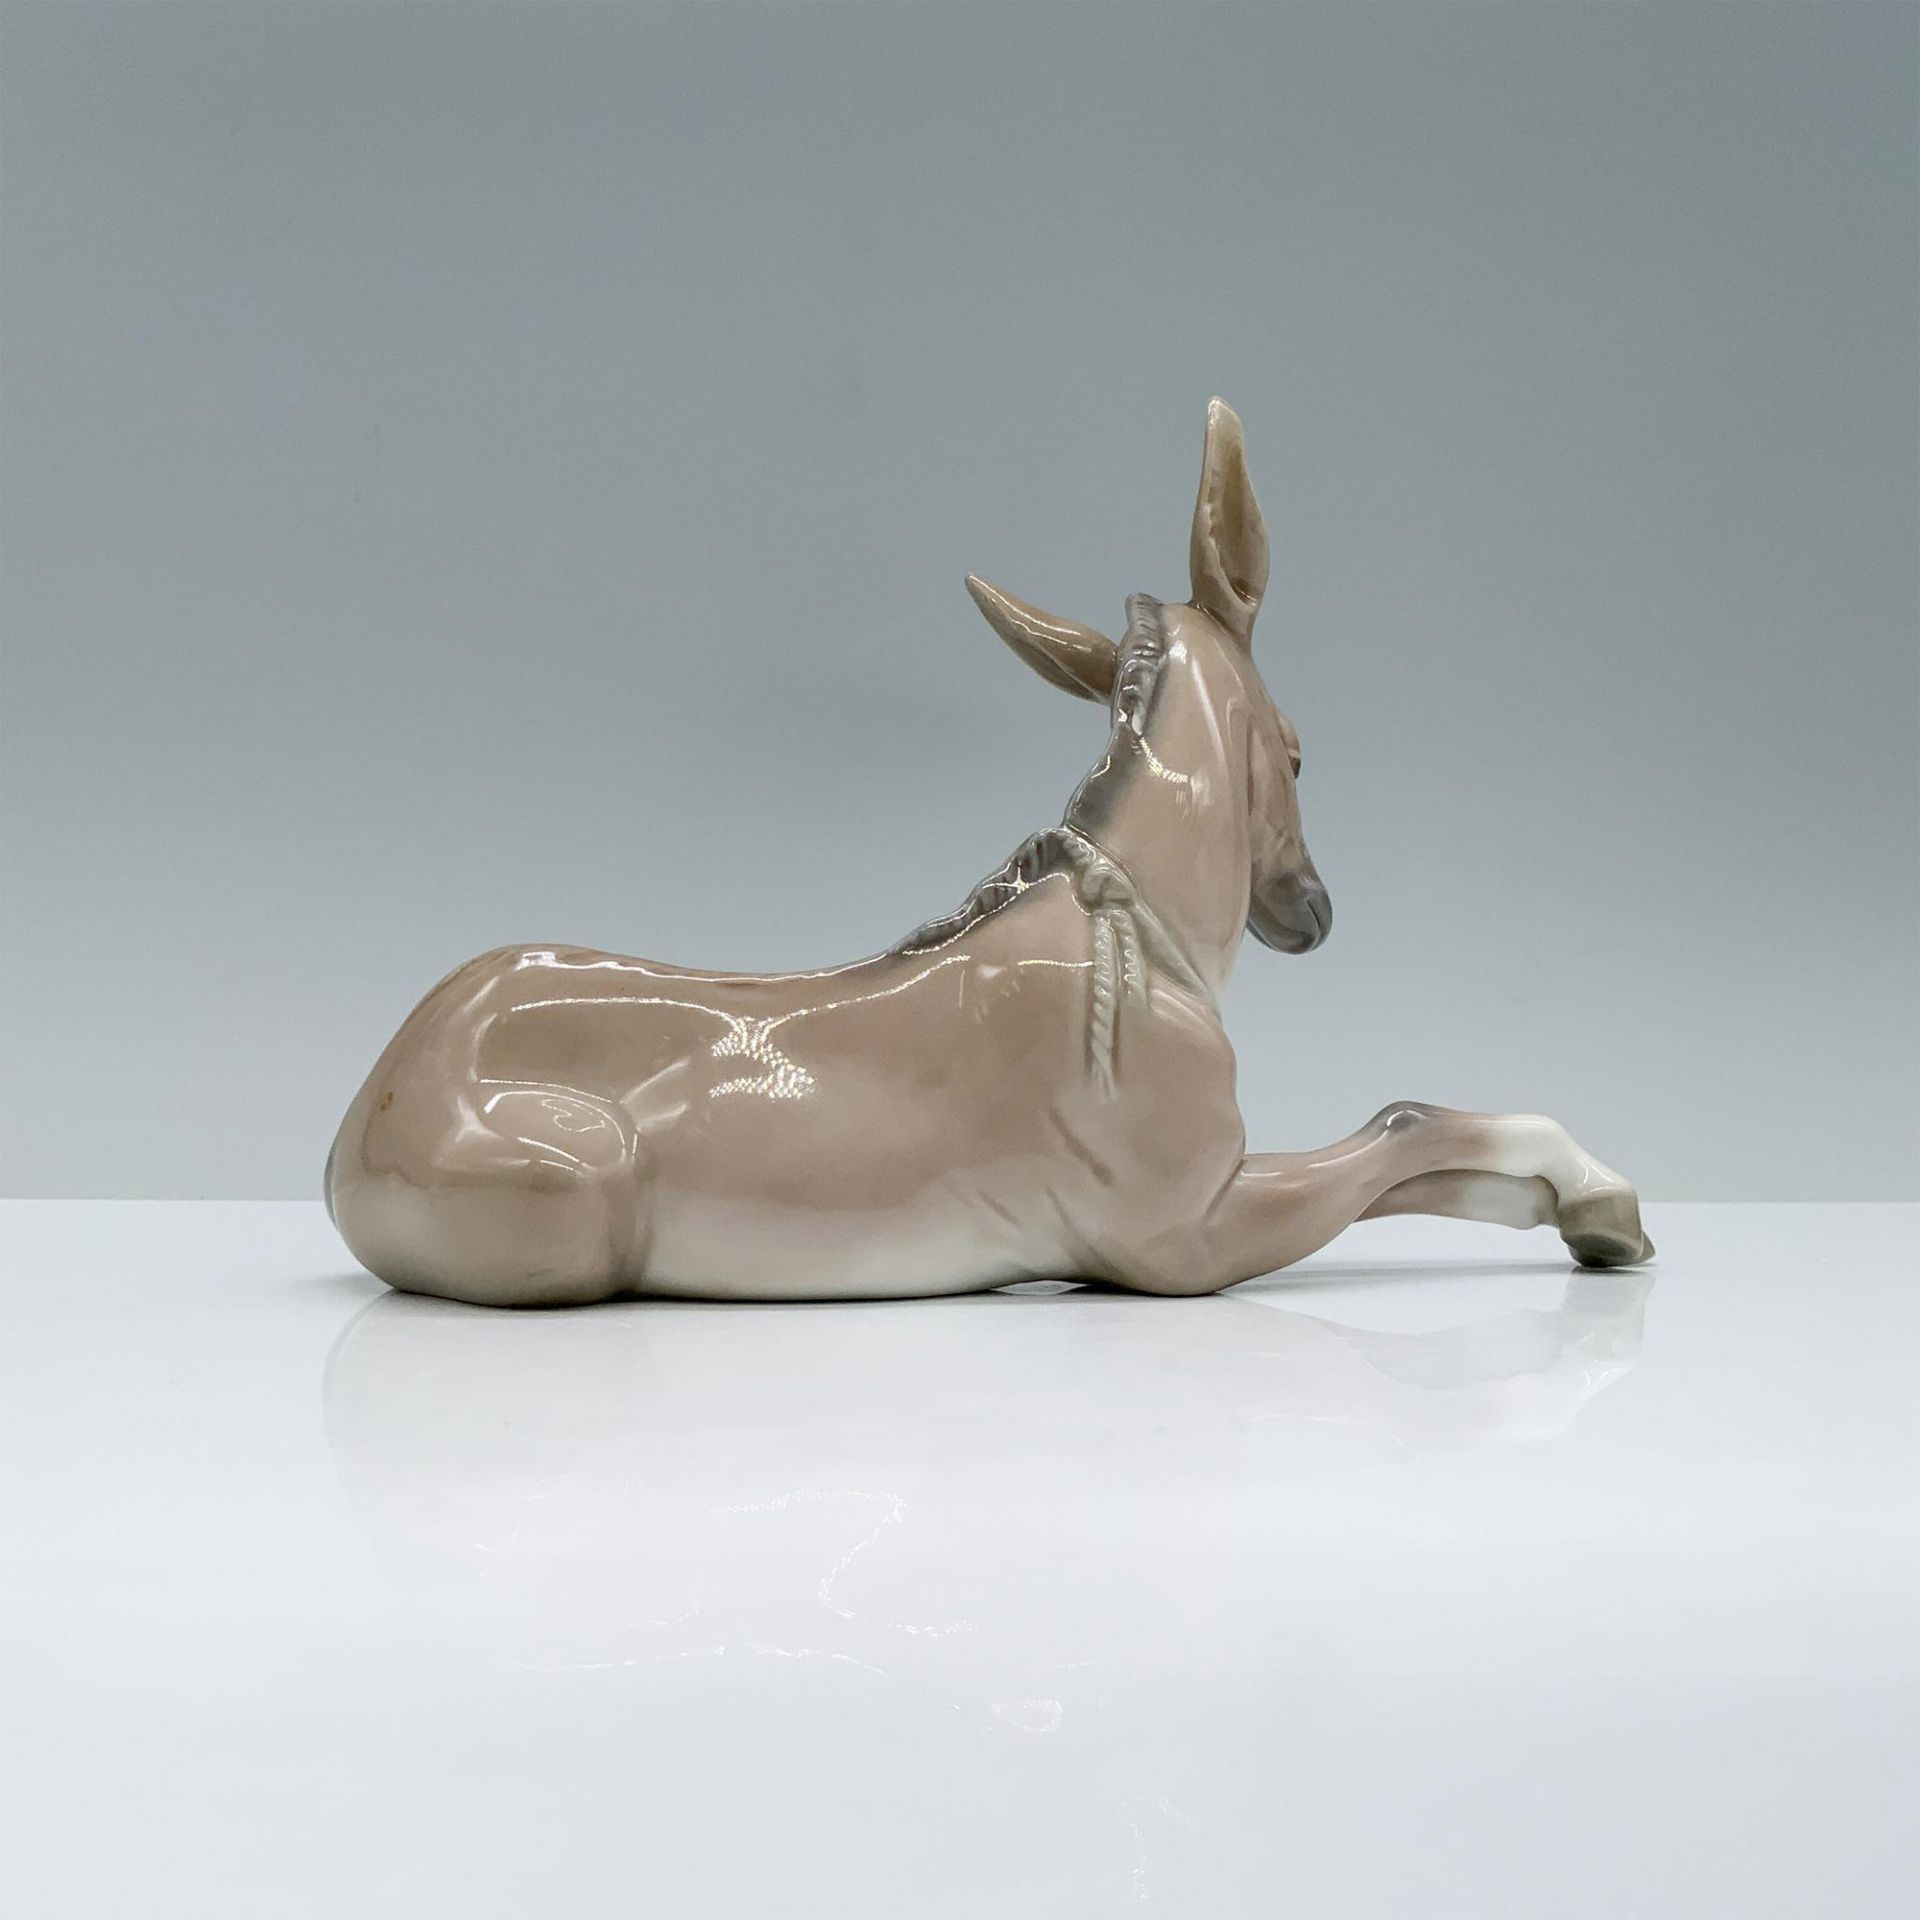 Lladro Porcelain Figurine, Donkey 1004679 - Image 2 of 3